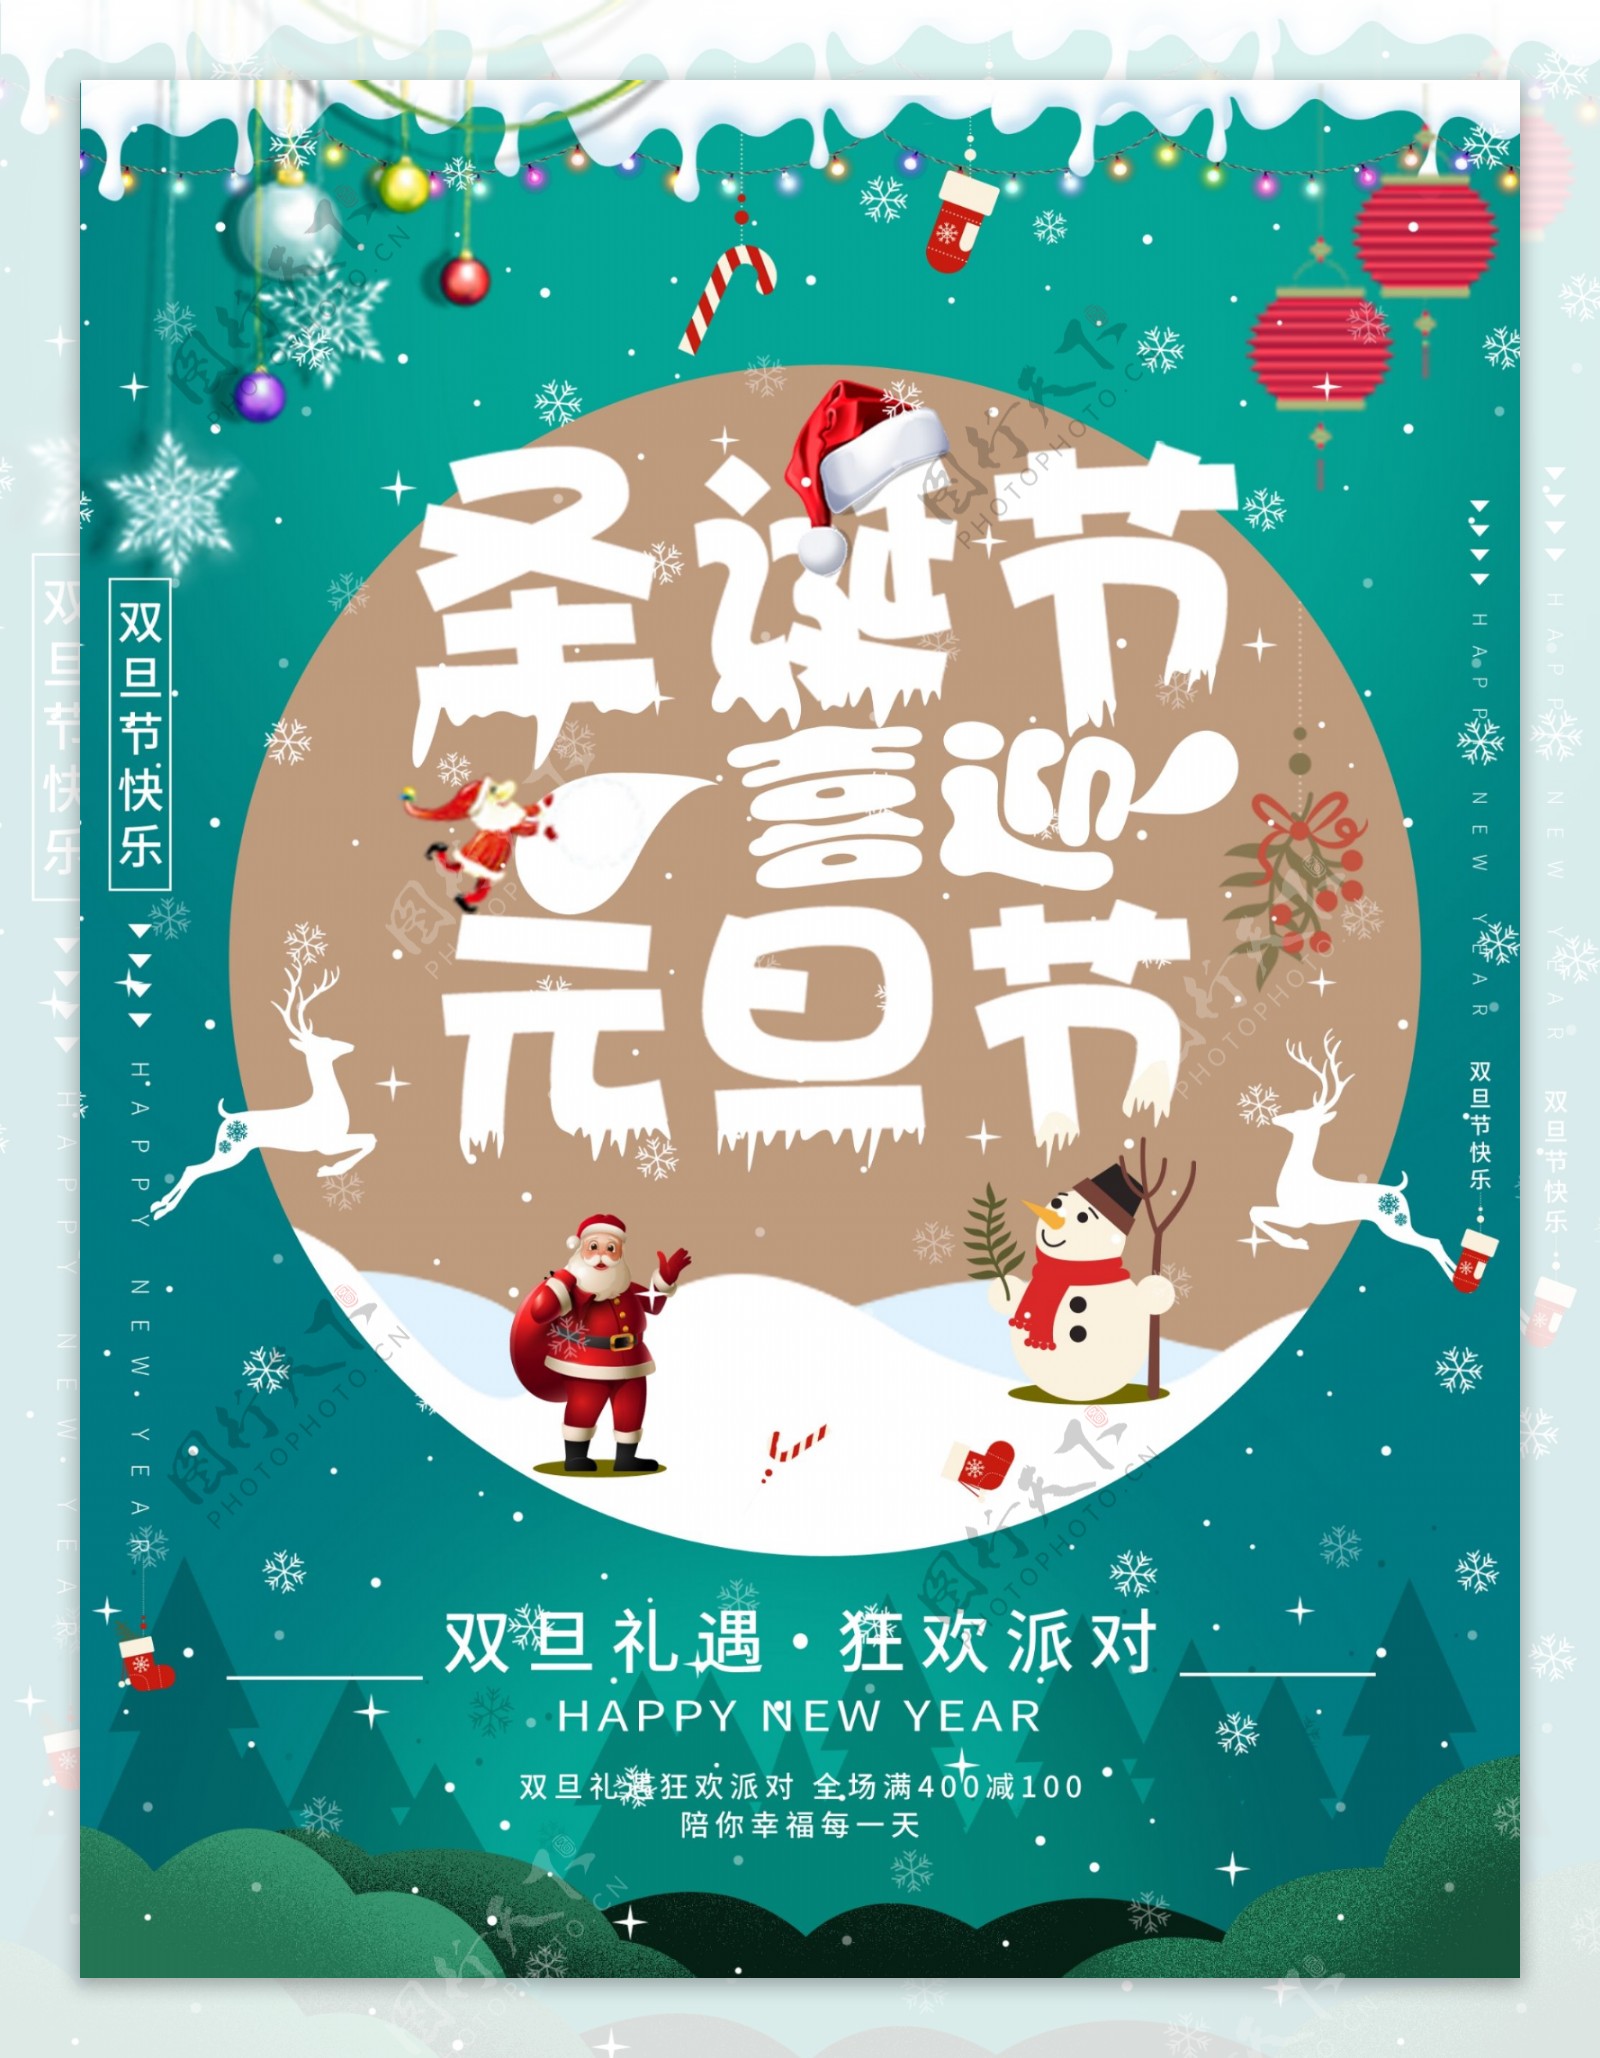 蓝色清新喜迎圣诞节元旦节双旦礼遇活动海报